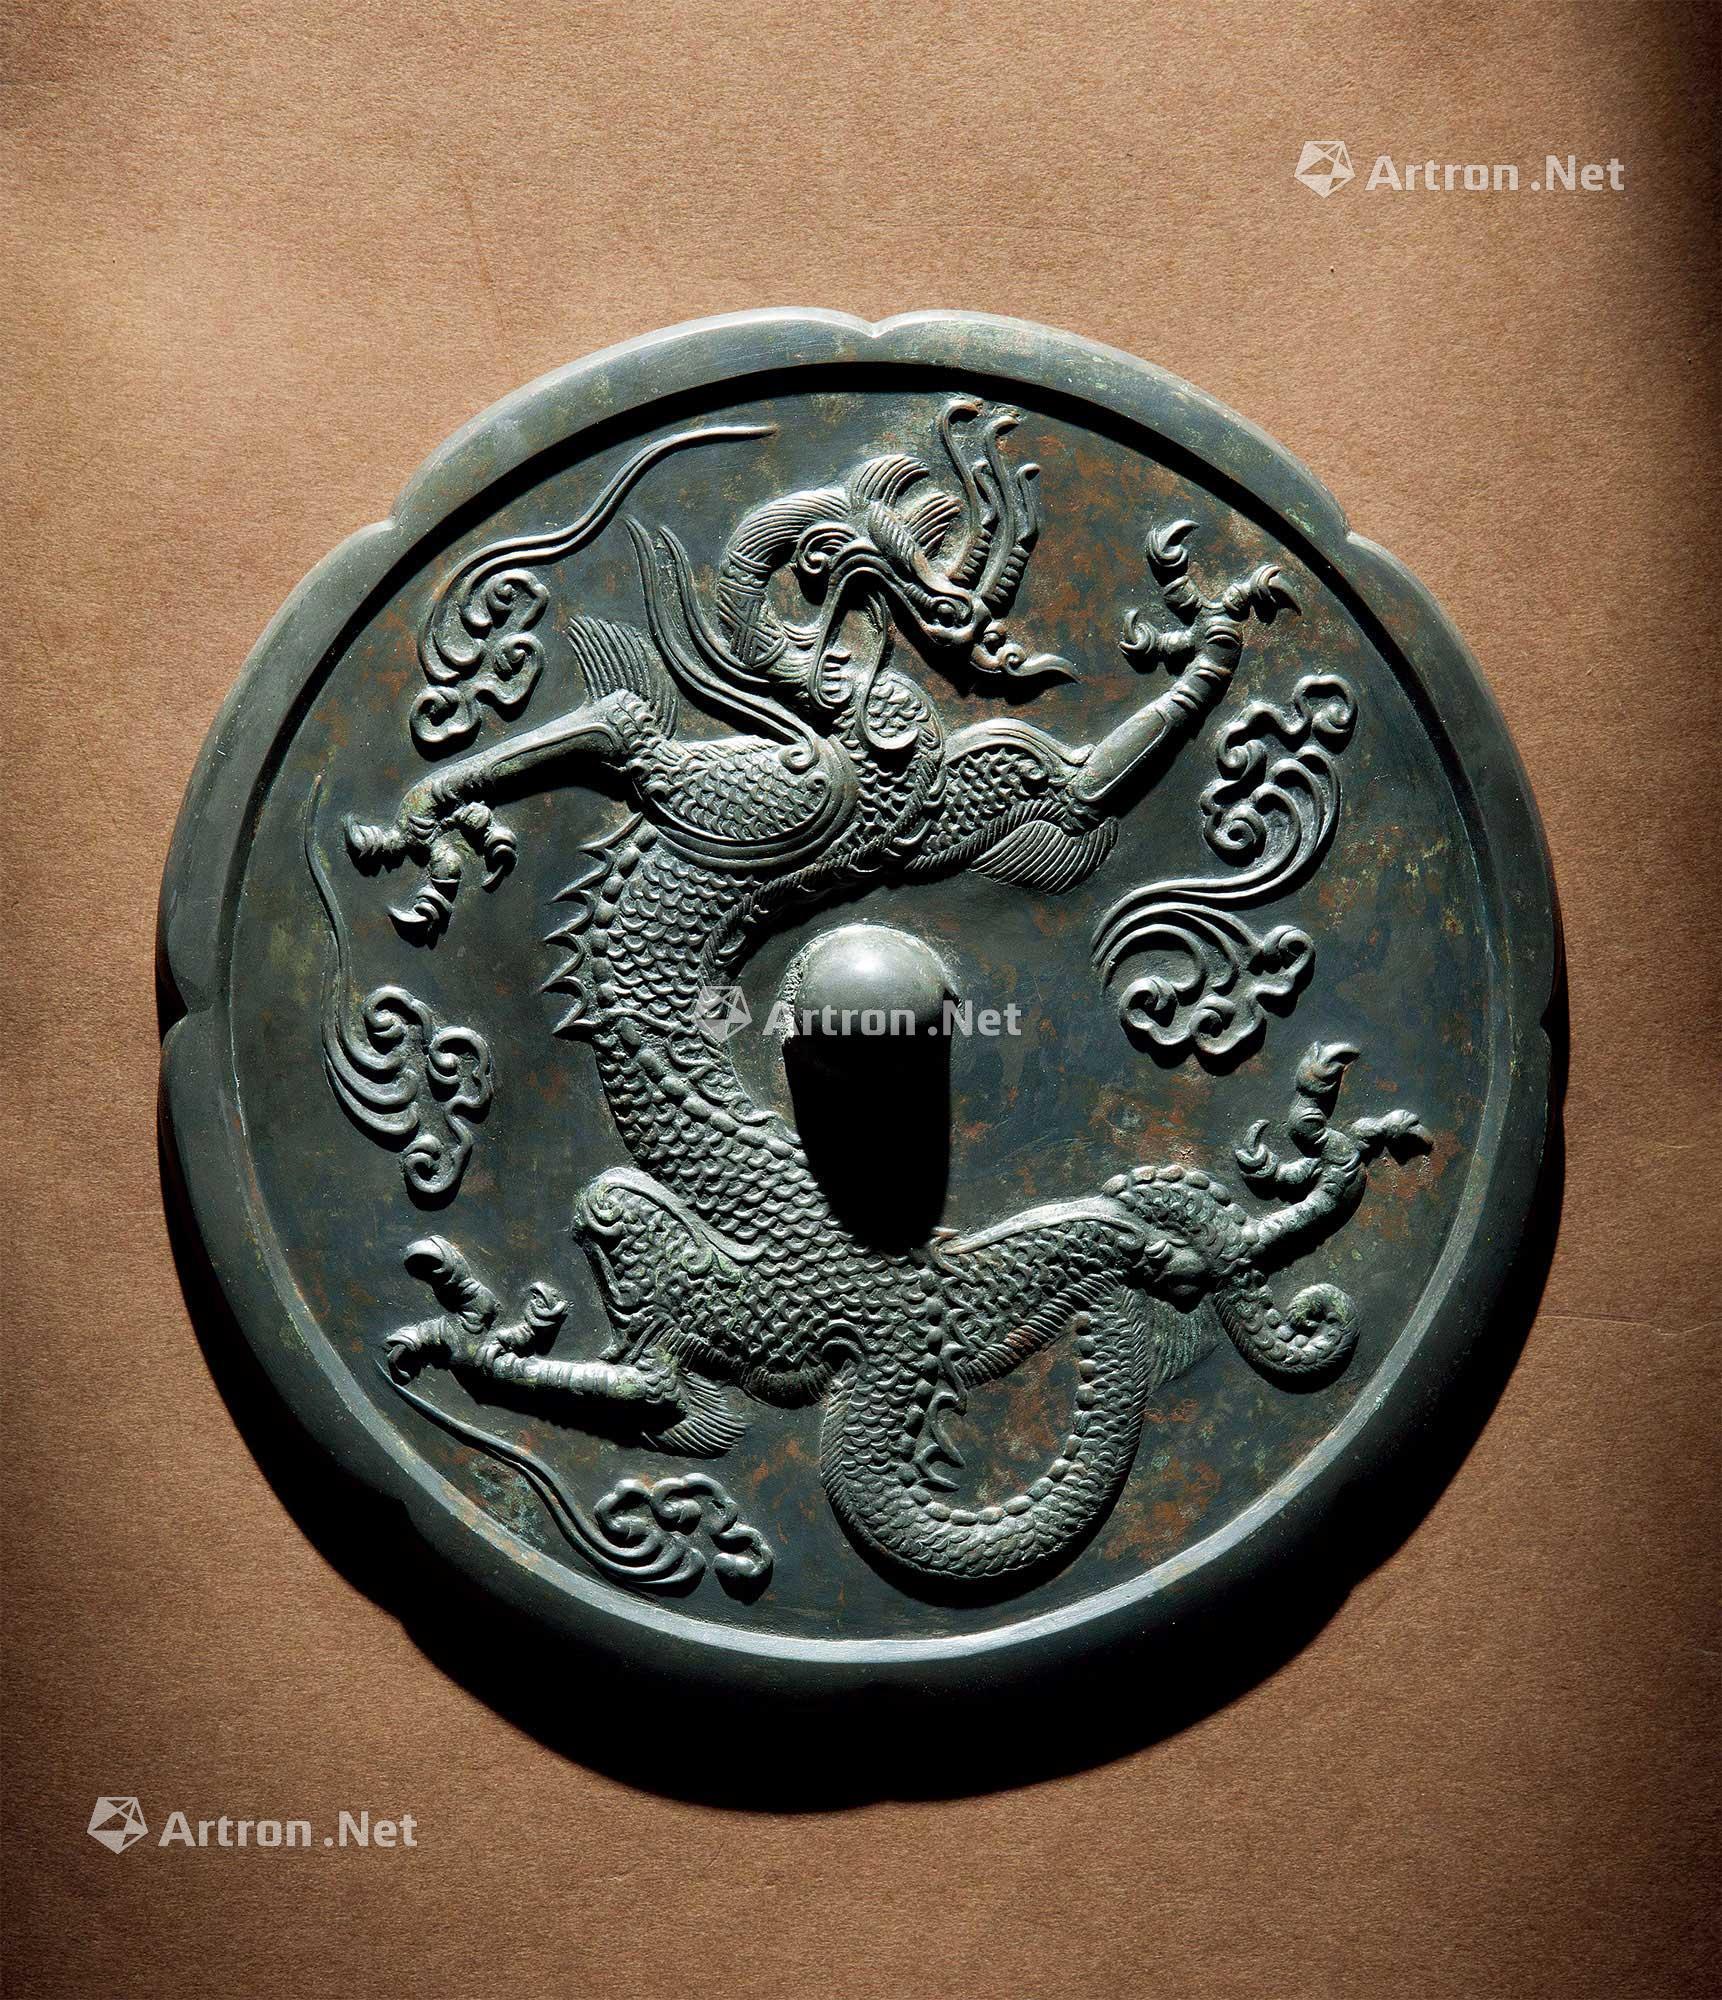 唐代铜镜龙纹图片